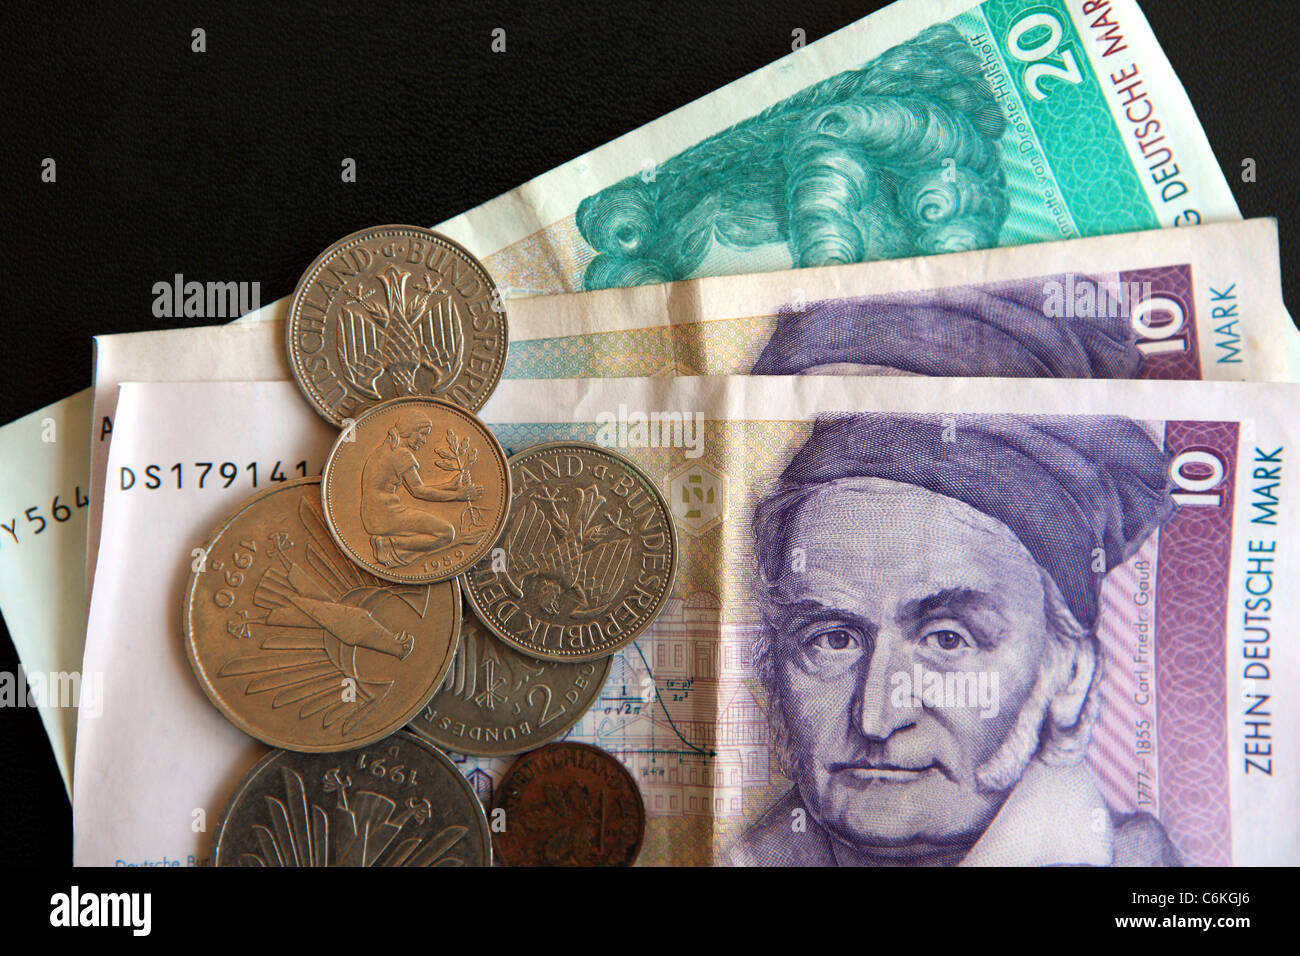 German Deutsche Mark notes and Pfennig coins Stock Photo